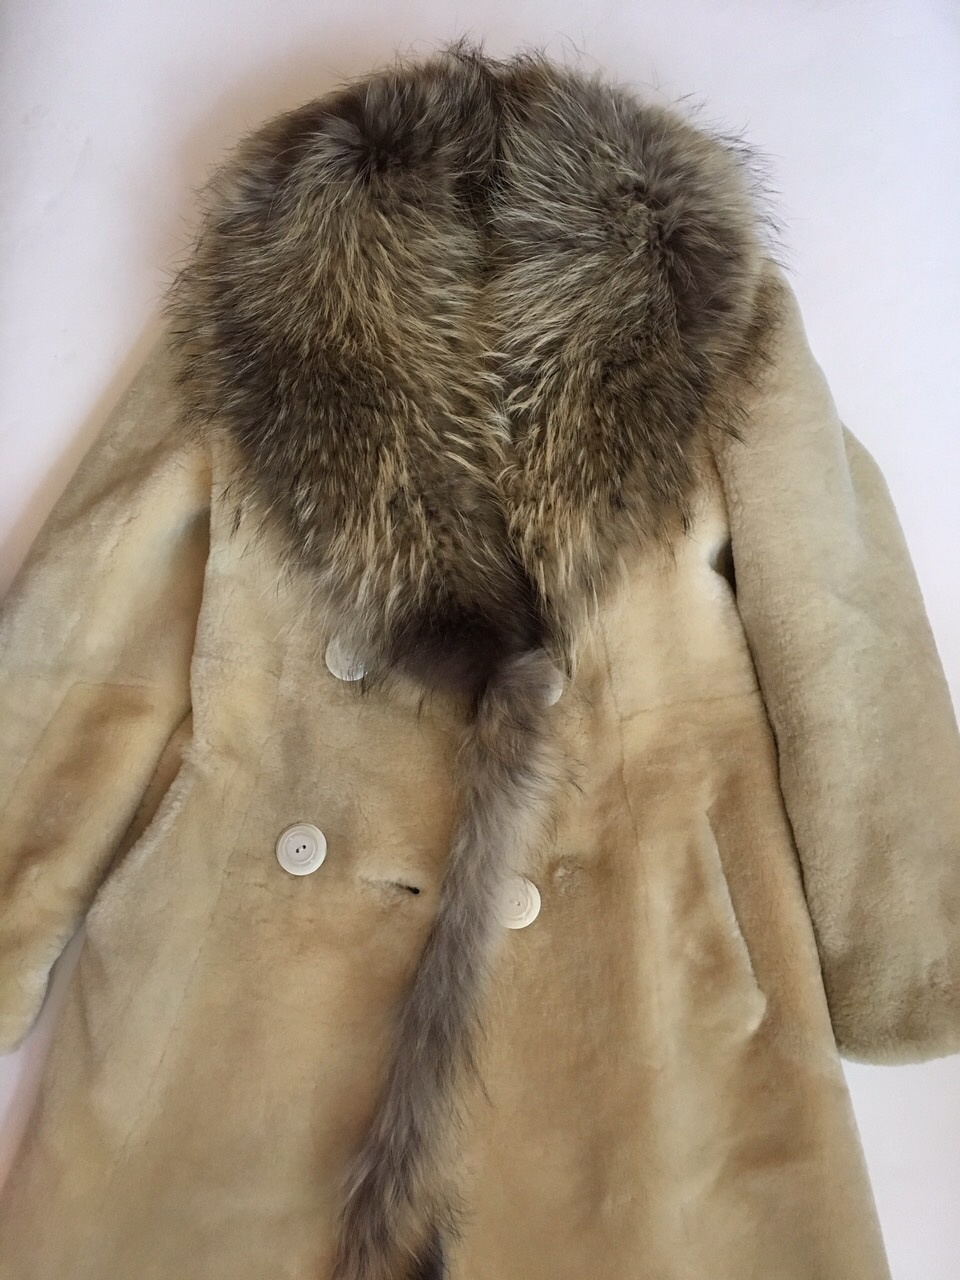 Меховое пальто Roberto Ferretti, 40-44 размер